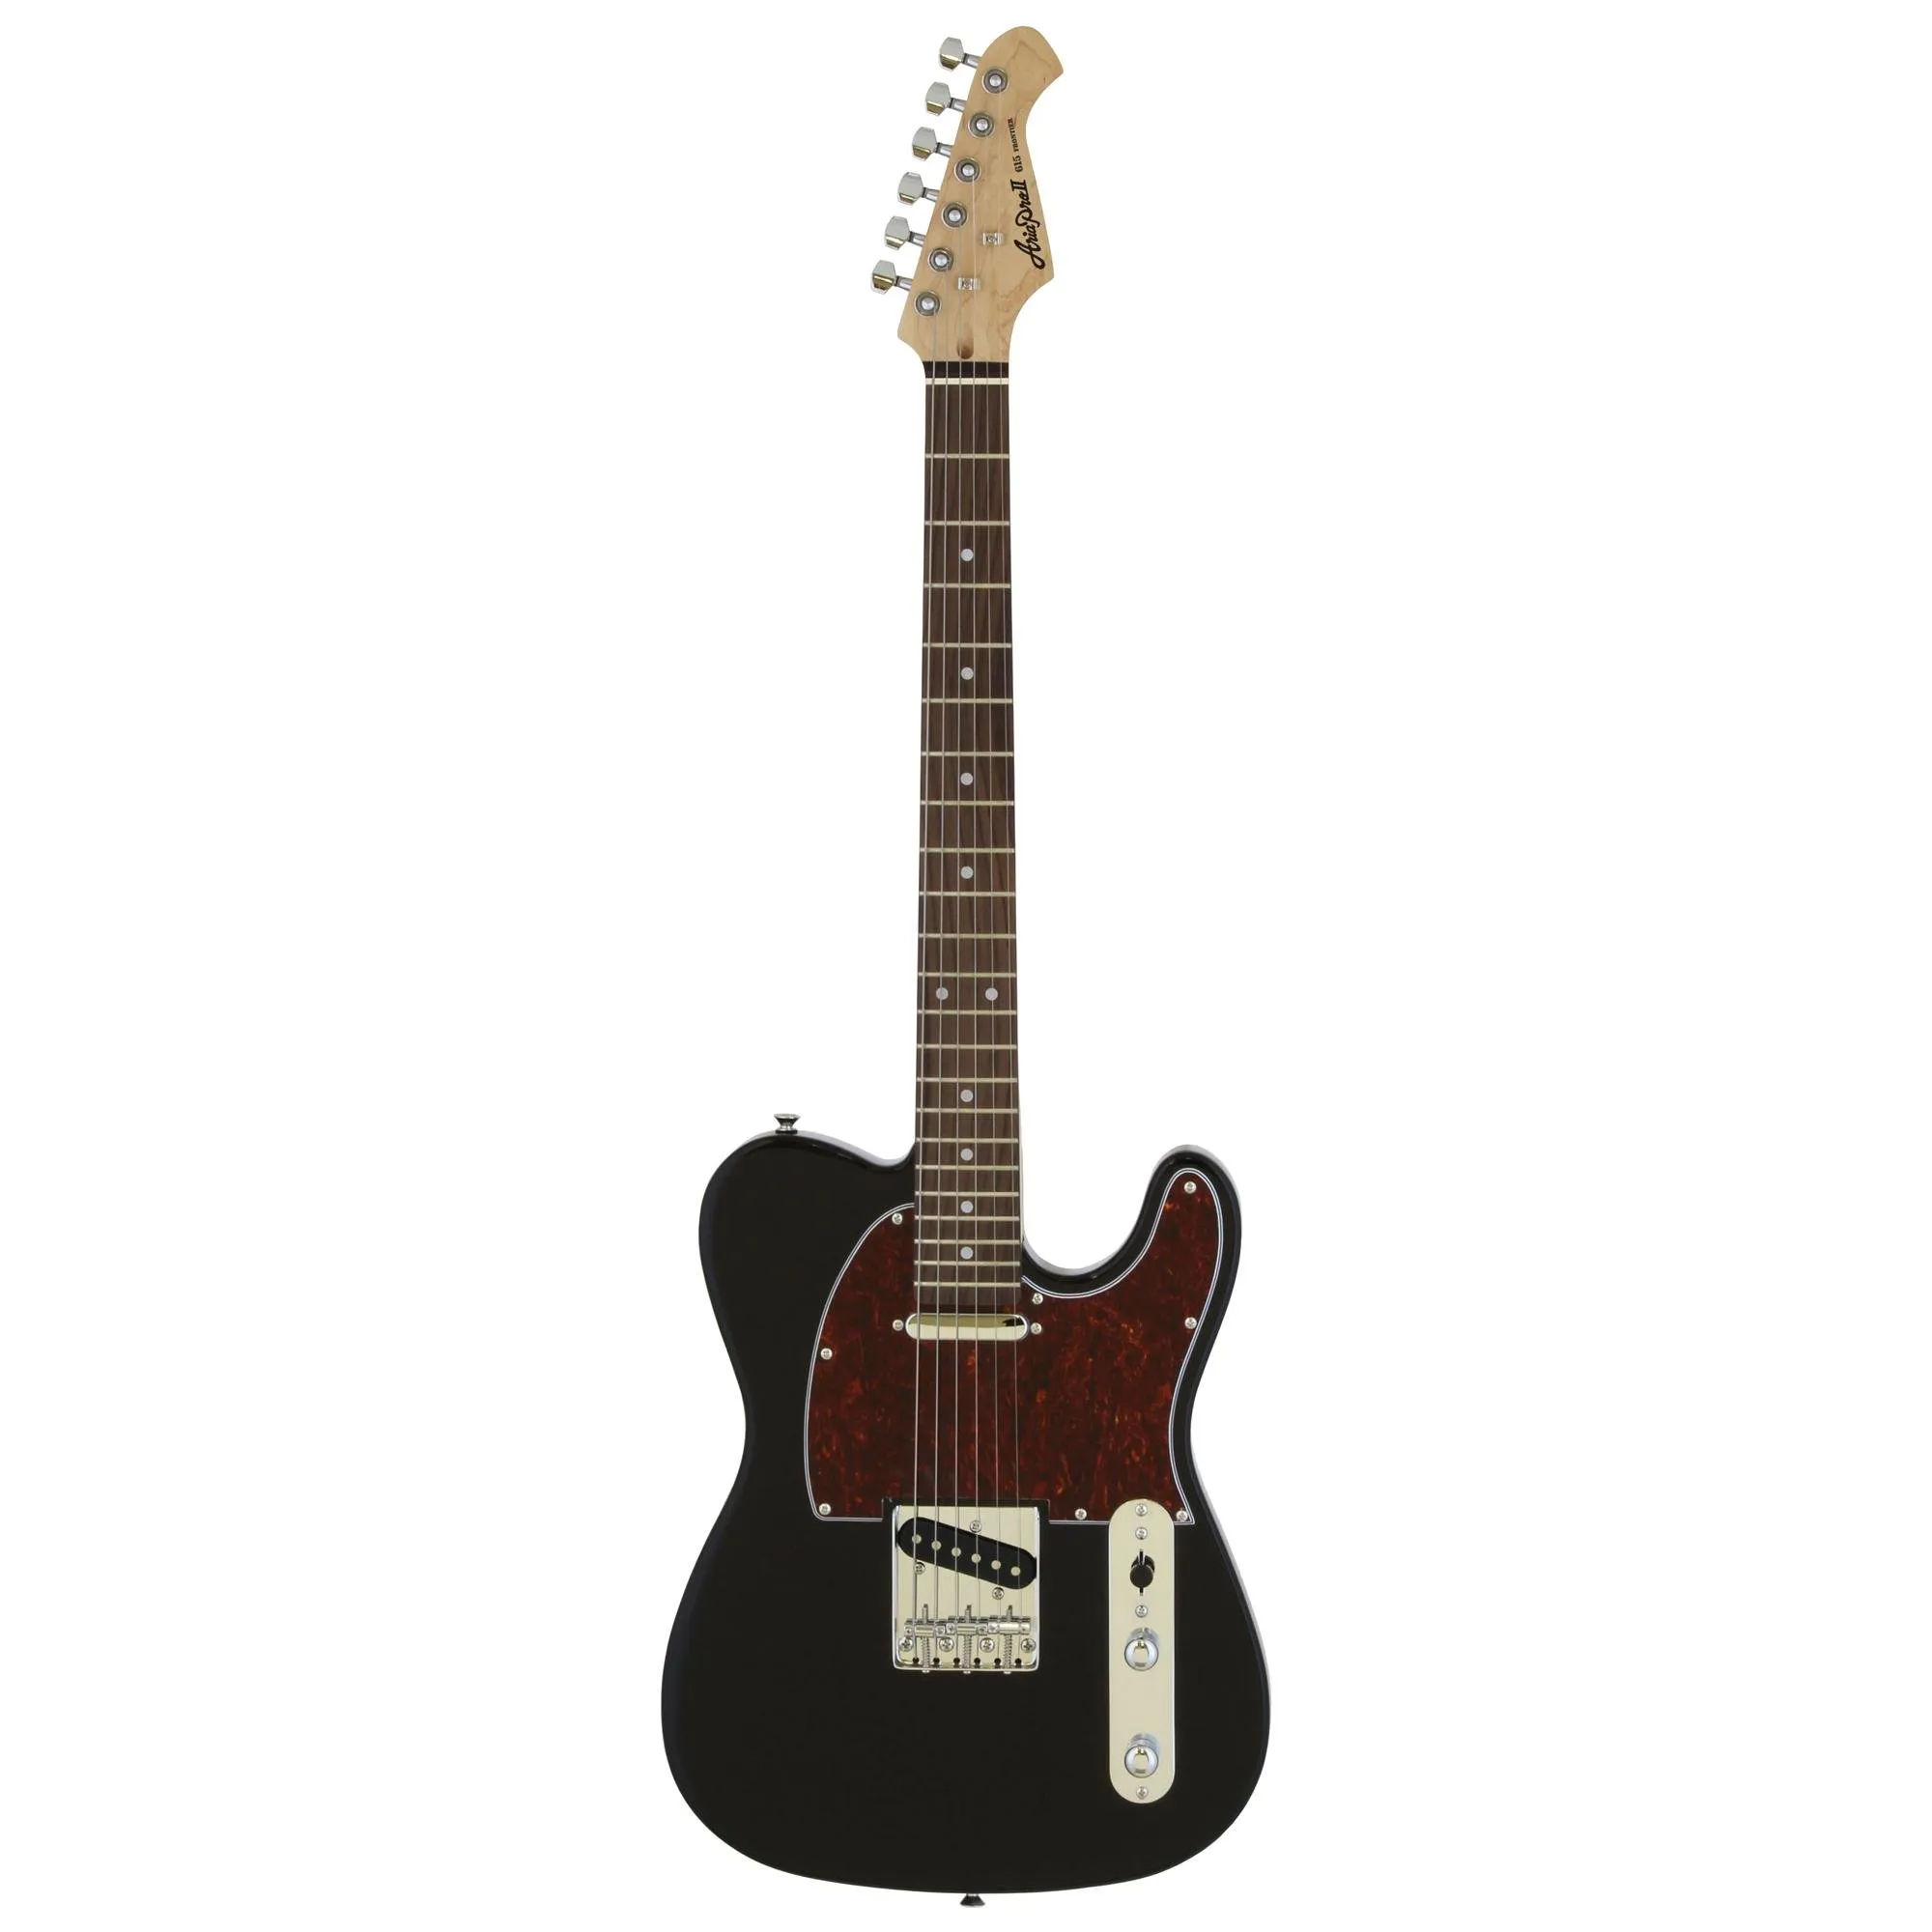 Guitarra Aria TEG-002 Black With Red Tortoise Pickguard por 1.291,00 à vista no boleto/pix ou parcele em até 12x sem juros. Compre na loja Mundomax!